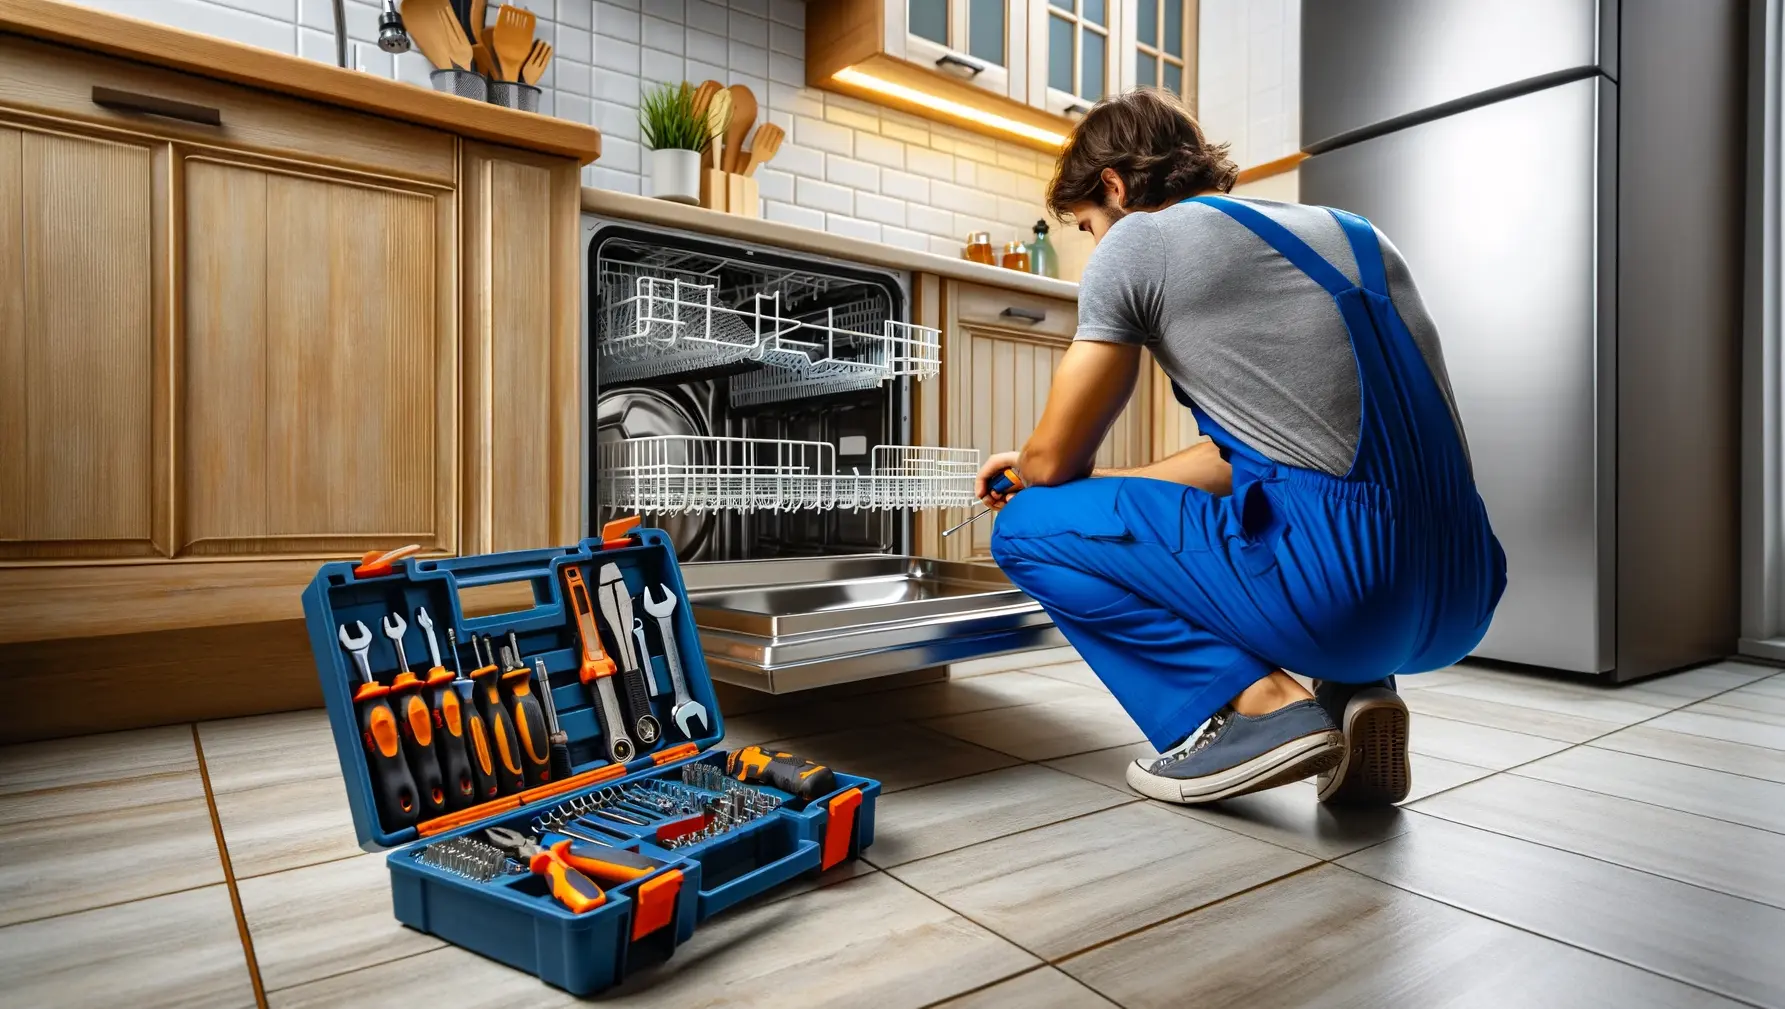 Regular maintenance extends life of appliances